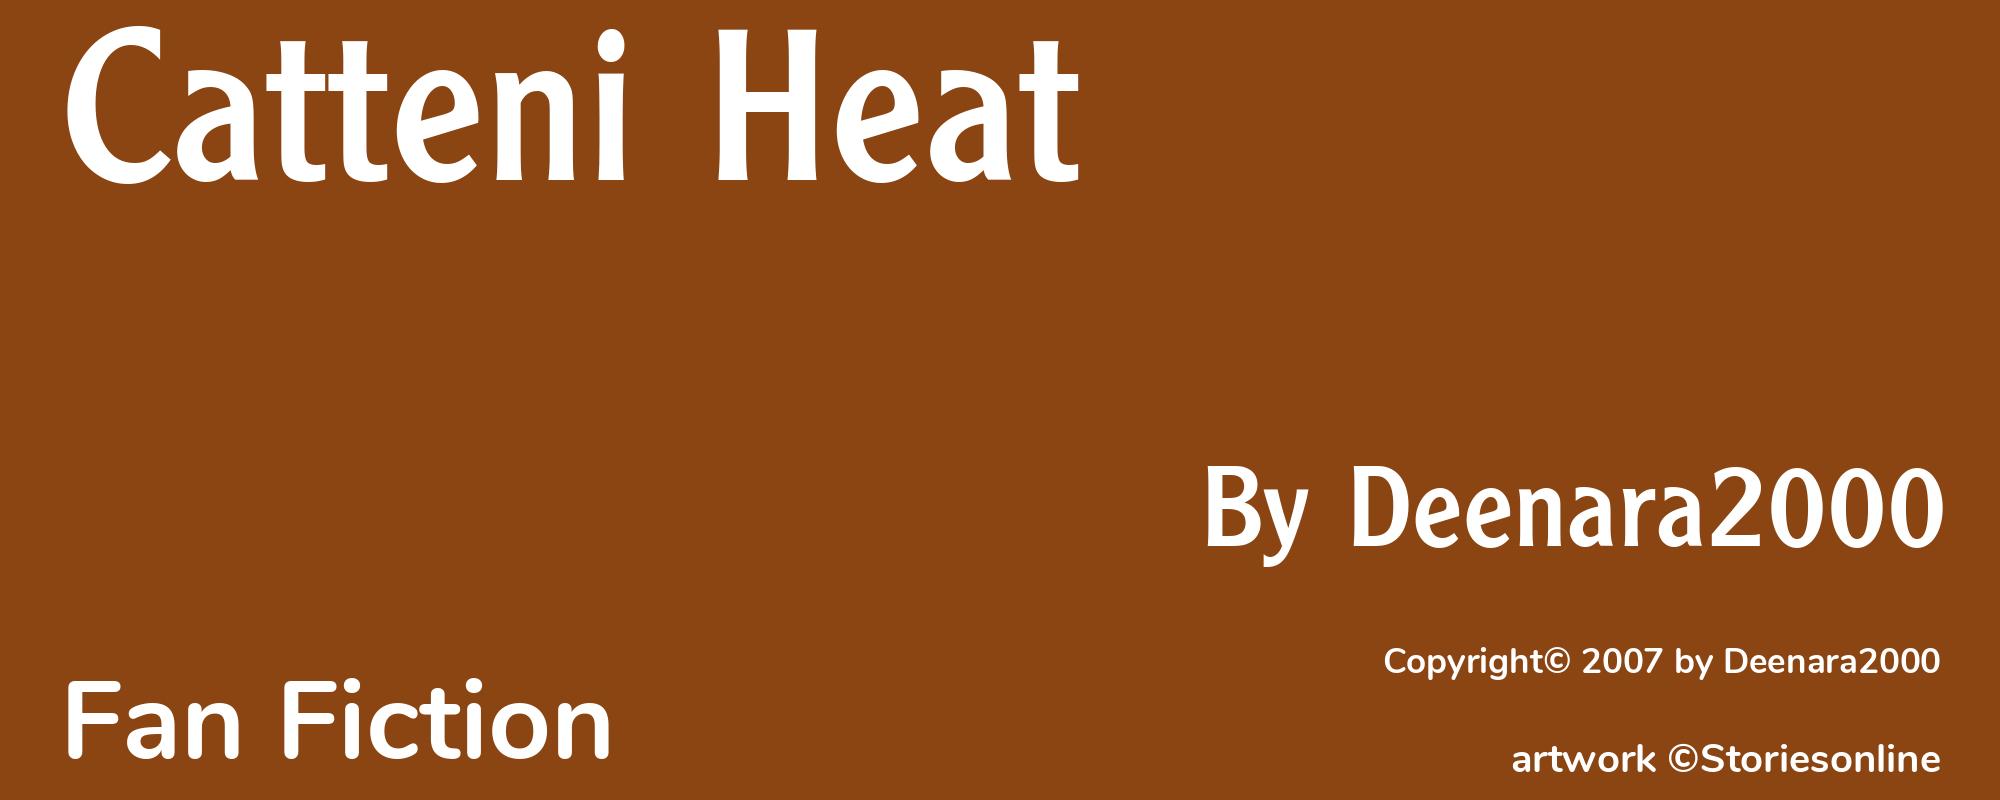 Catteni Heat - Cover